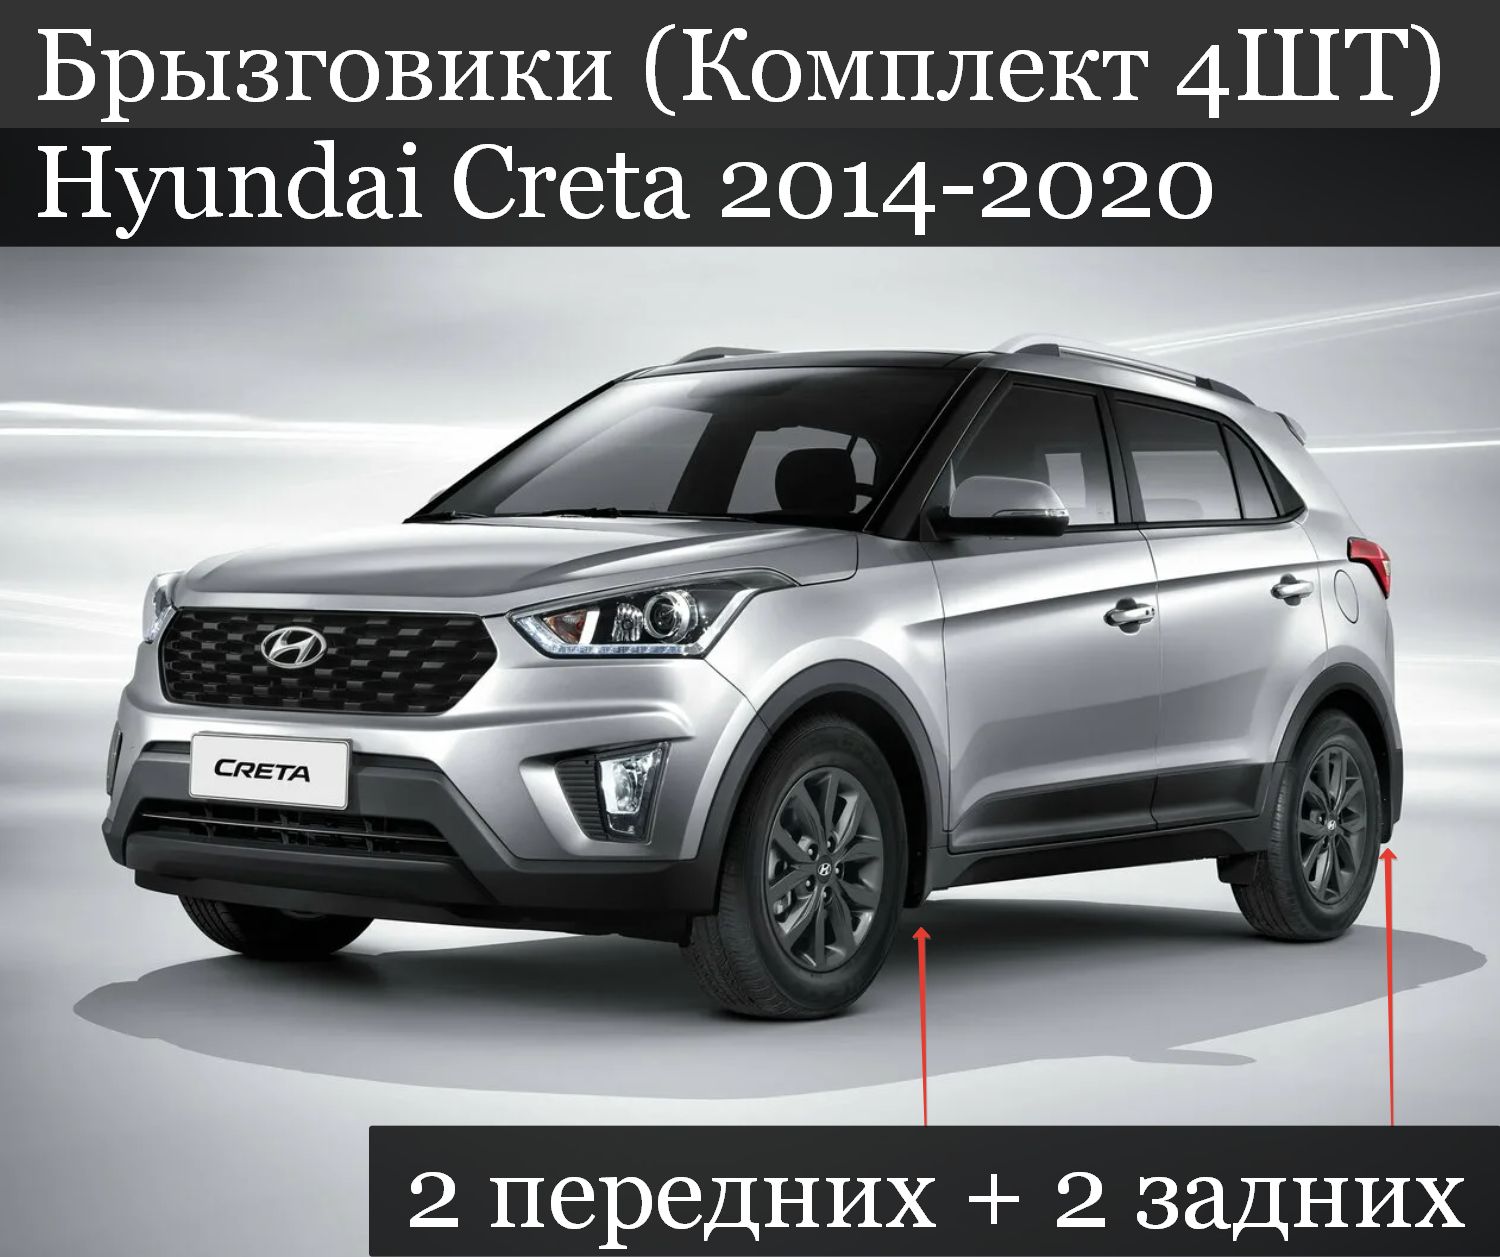 Hyundai creta кузов. Хендай Крета 2020. Hyundai Creta 2021. Новая Hyundai Creta 2020. Hyundai Creta 2015.